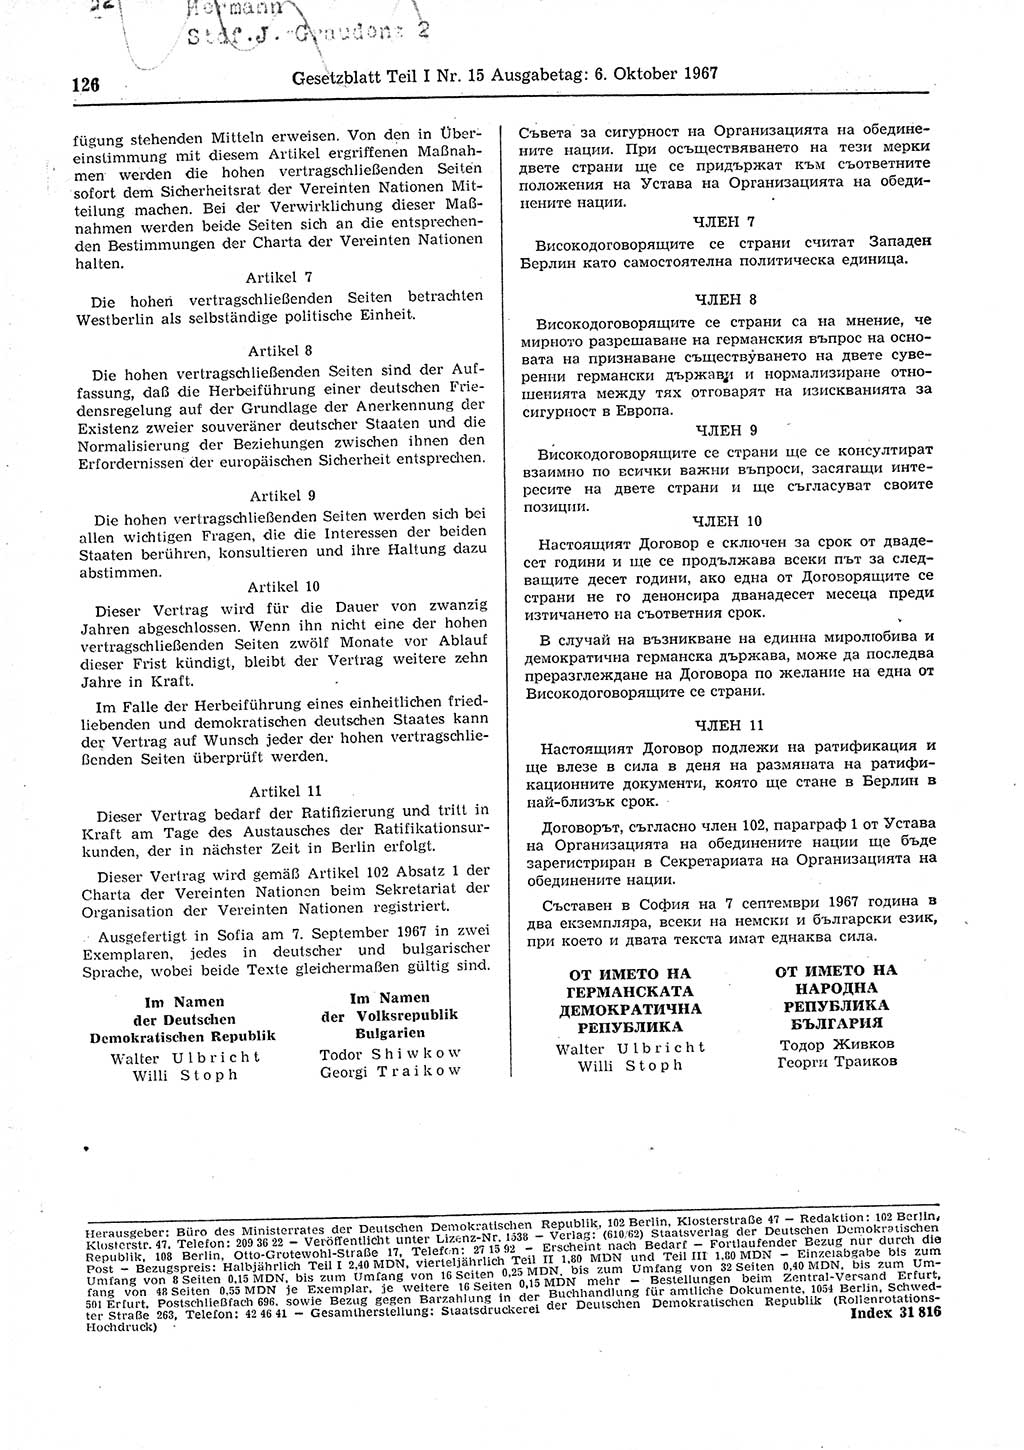 Gesetzblatt (GBl.) der Deutschen Demokratischen Republik (DDR) Teil Ⅰ 1967, Seite 126 (GBl. DDR Ⅰ 1967, S. 126)